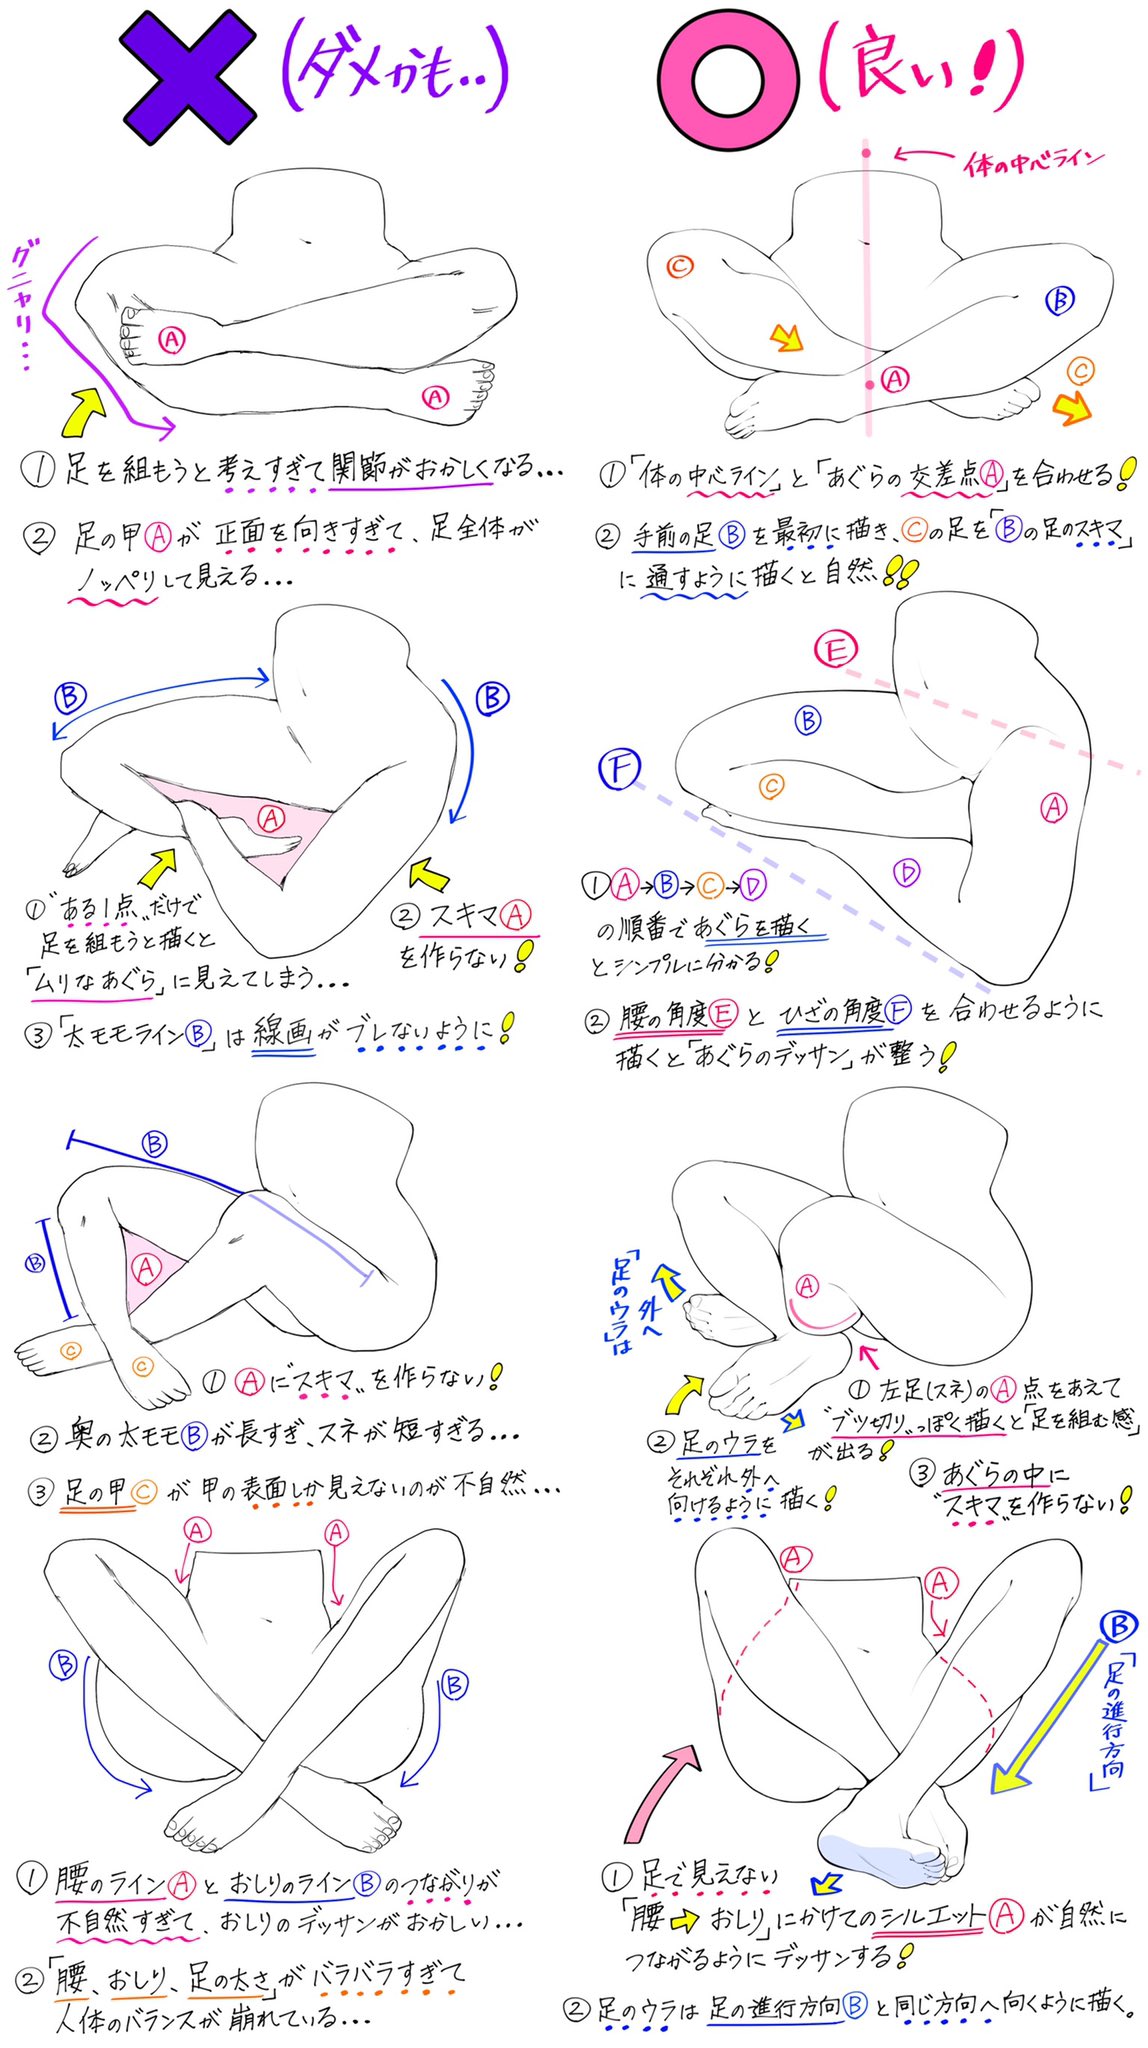 吉村拓也 イラスト講座 あぐらポーズの描き方 素肌とジーパン タイプの あぐらを描くときの ダメなこと と 良いこと T Co Xeuwwyz3zx Twitter